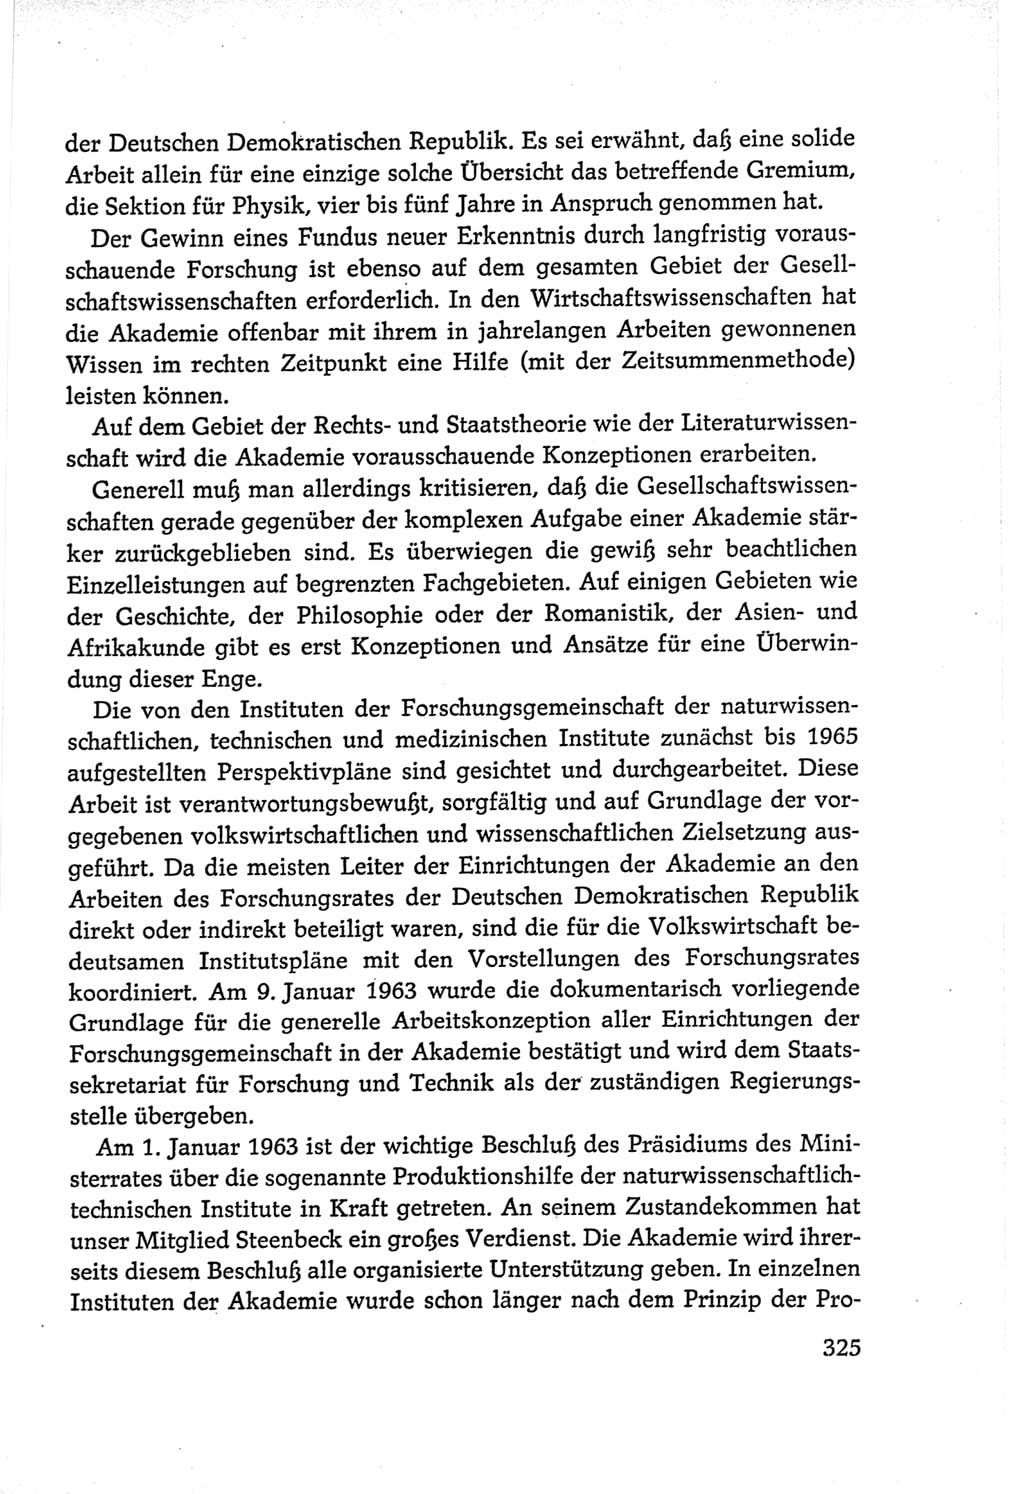 Protokoll der Verhandlungen des Ⅵ. Parteitages der Sozialistischen Einheitspartei Deutschlands (SED) [Deutsche Demokratische Republik (DDR)] 1963, Band Ⅱ, Seite 325 (Prot. Verh. Ⅵ. PT SED DDR 1963, Bd. Ⅱ, S. 325)